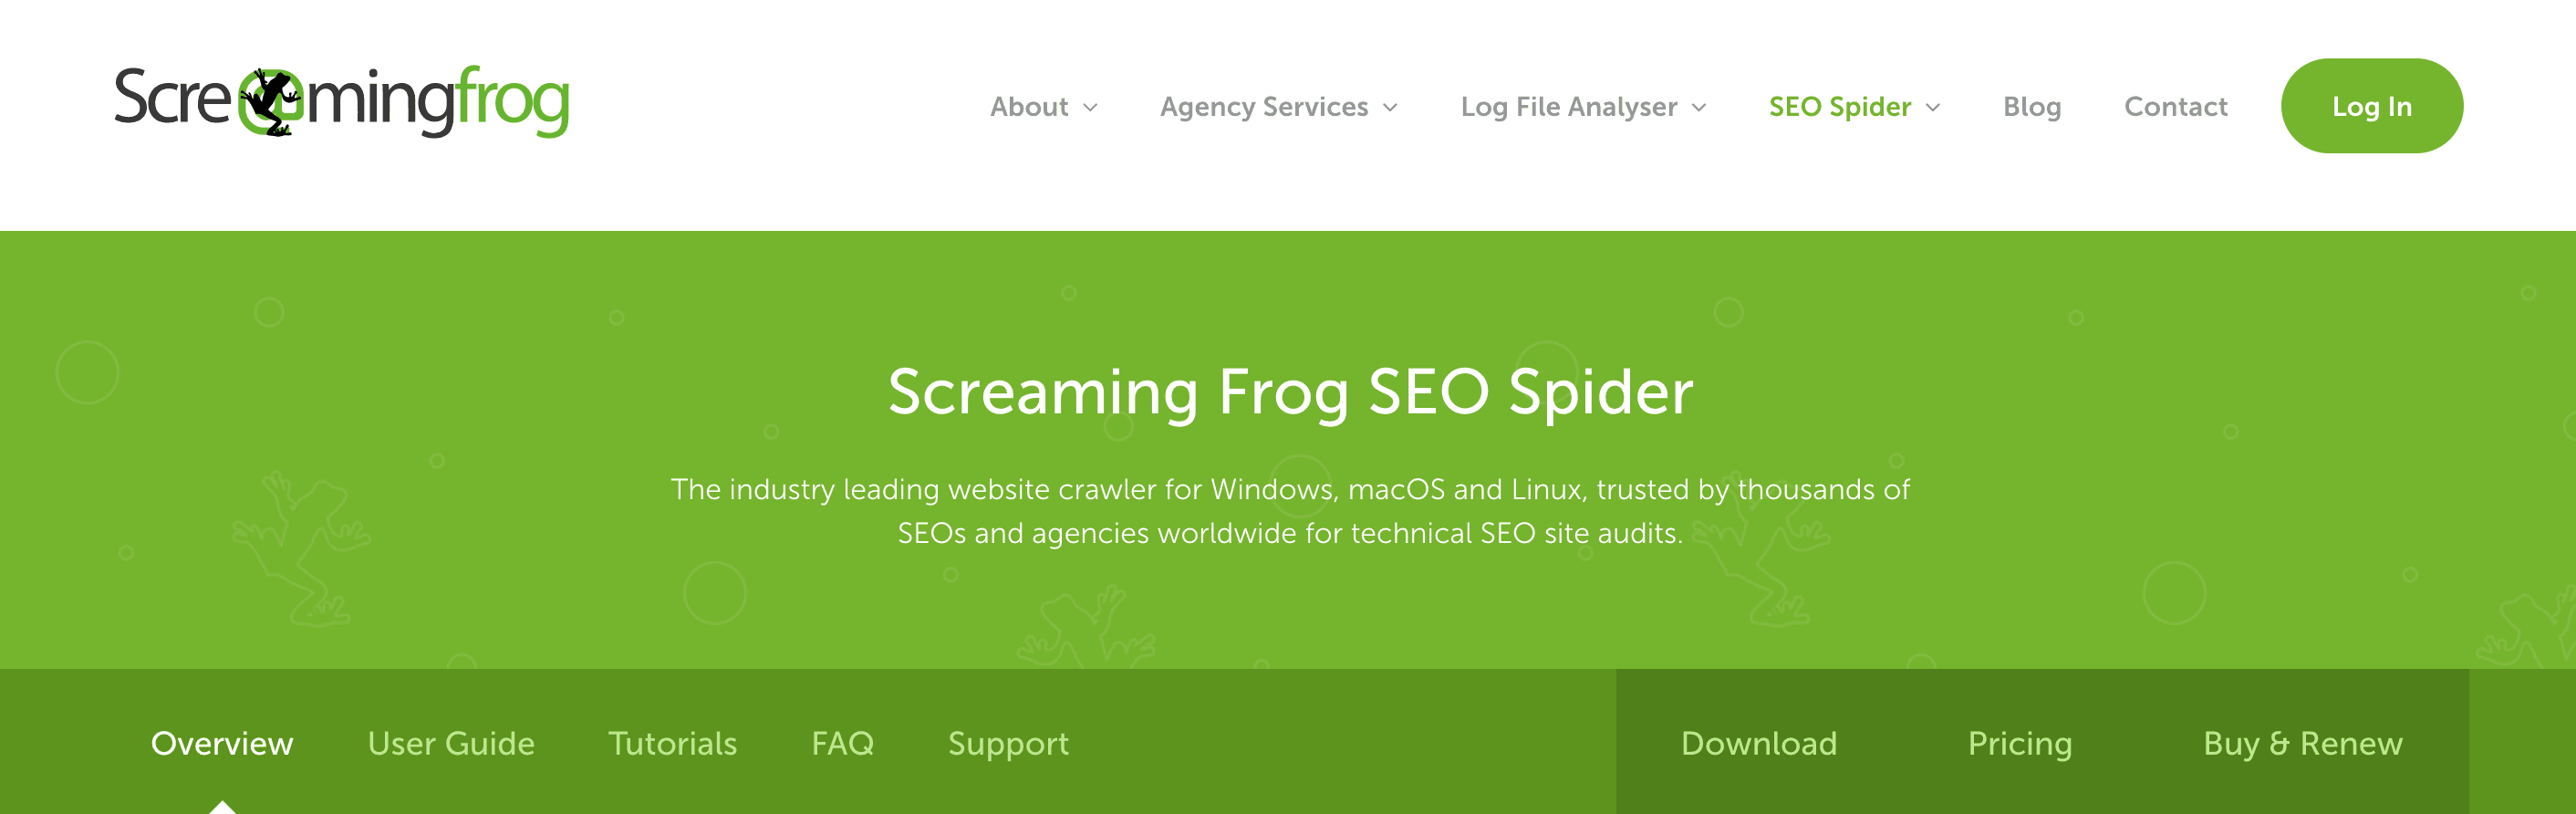 Screaming_Frog_SEO